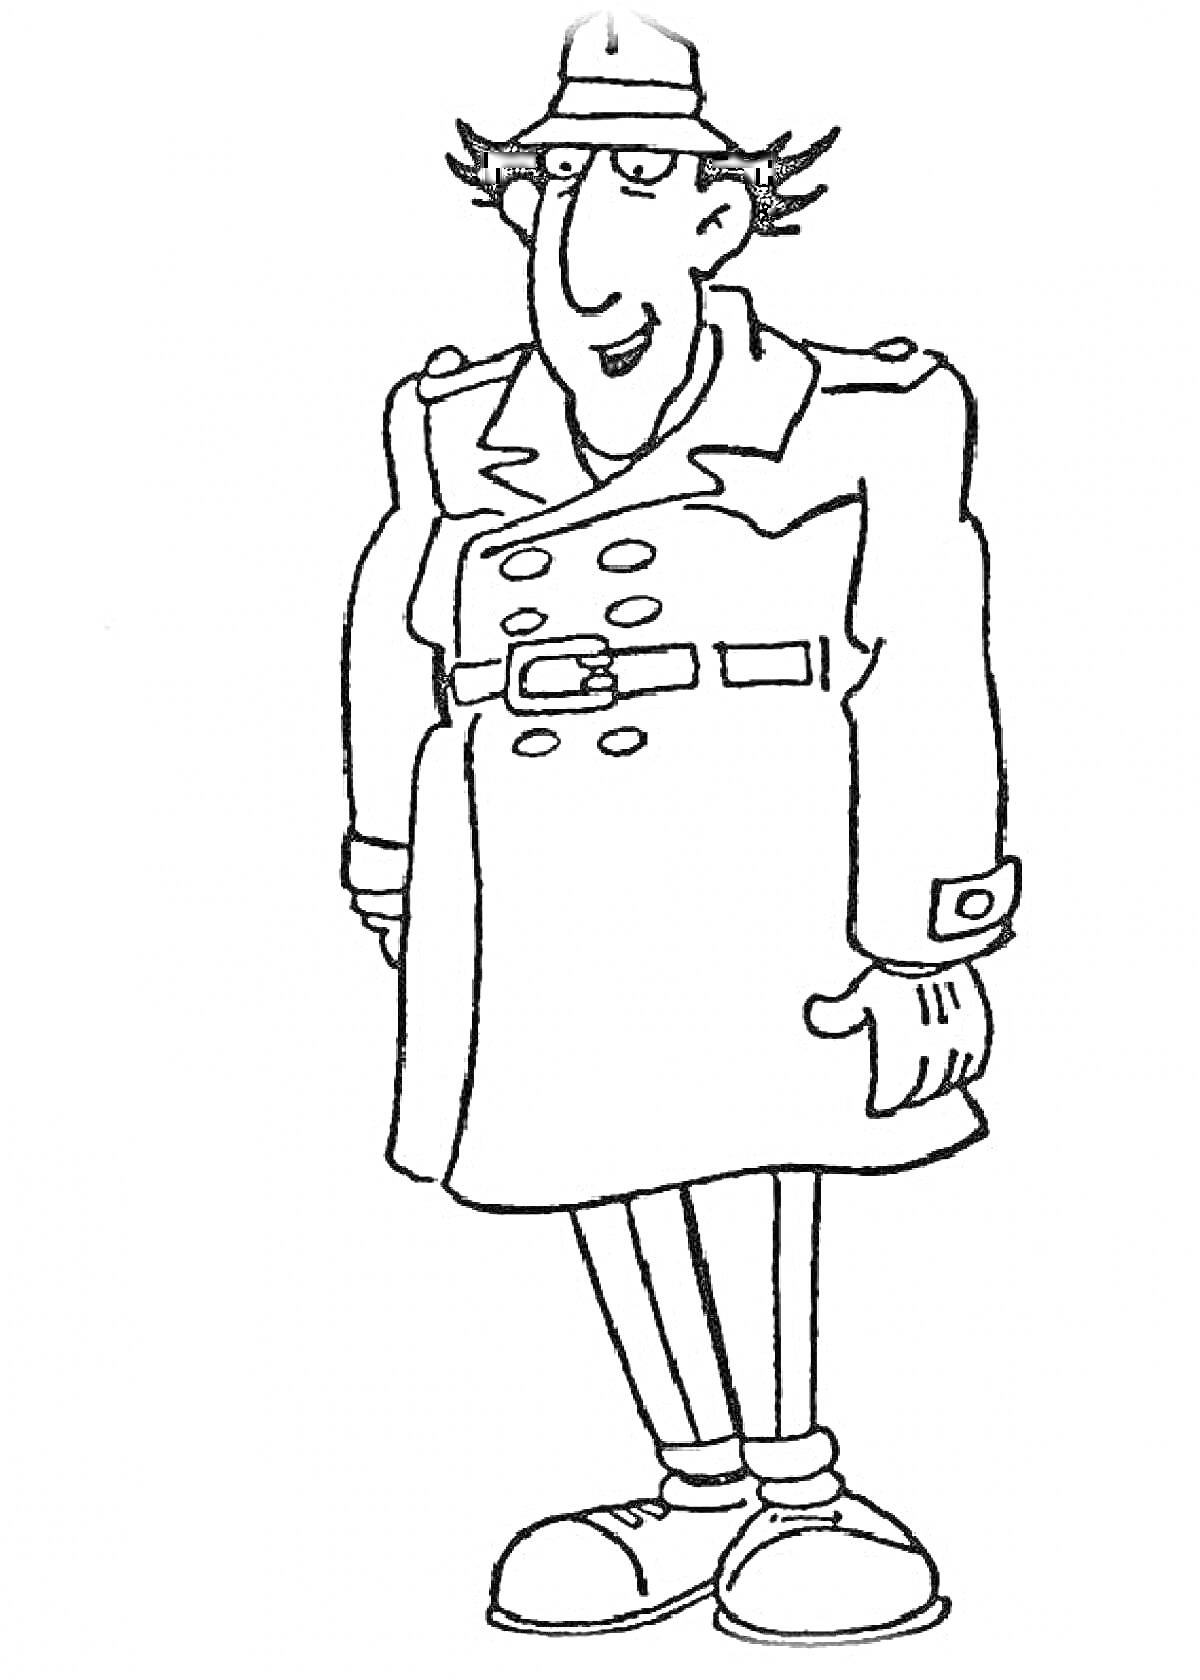 Инспектор Гаджет в пальто и шляпе